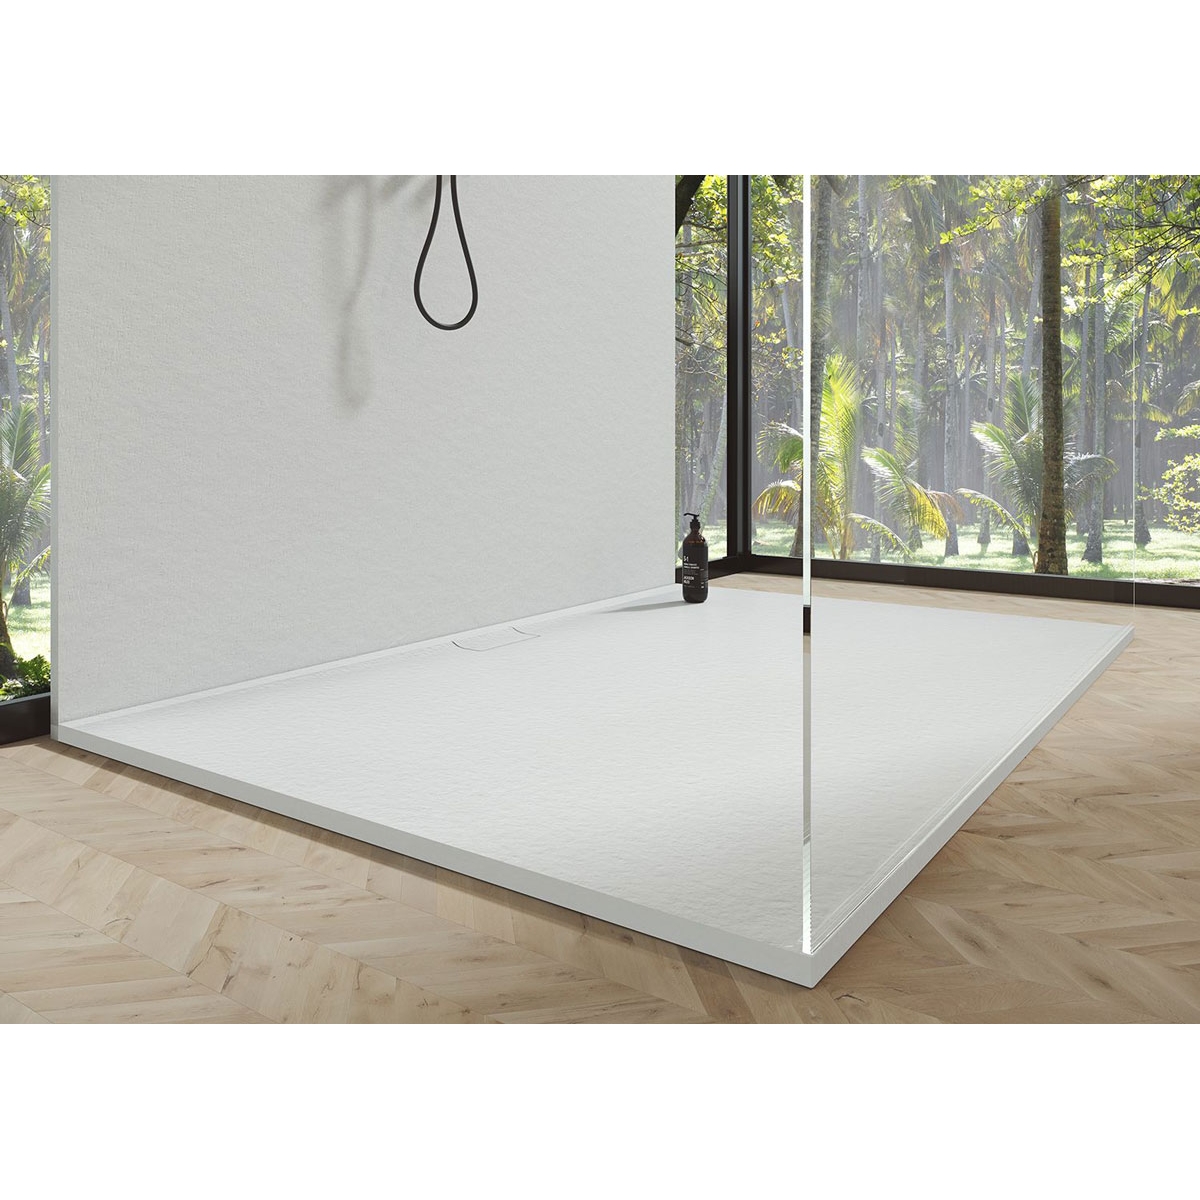 Base de duche retangular 120x80 Nova Stone Cover White - Resin Shower Trays McBath